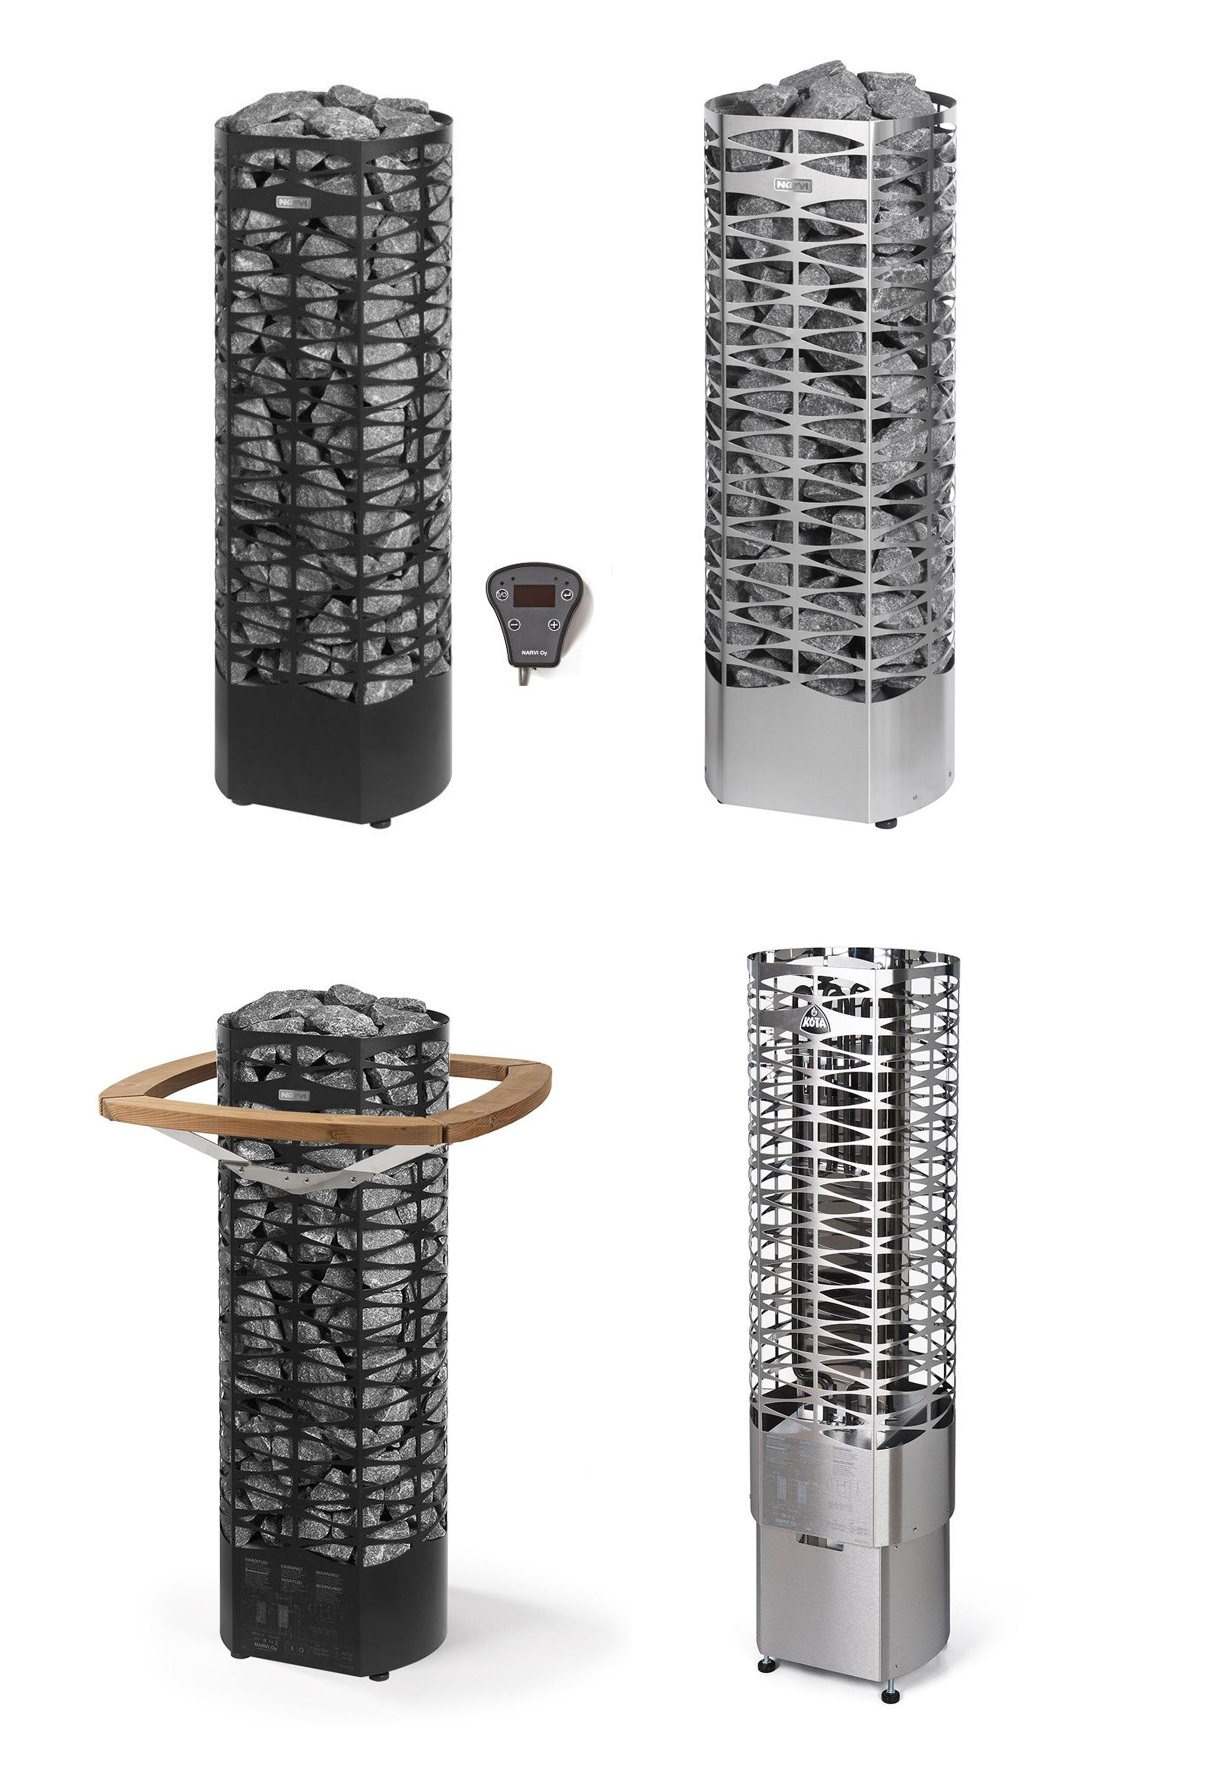 Narvi Saana -sähkökiuas ja lisätarvikkeet | Narvi Saana electrical sauna heater and accessories